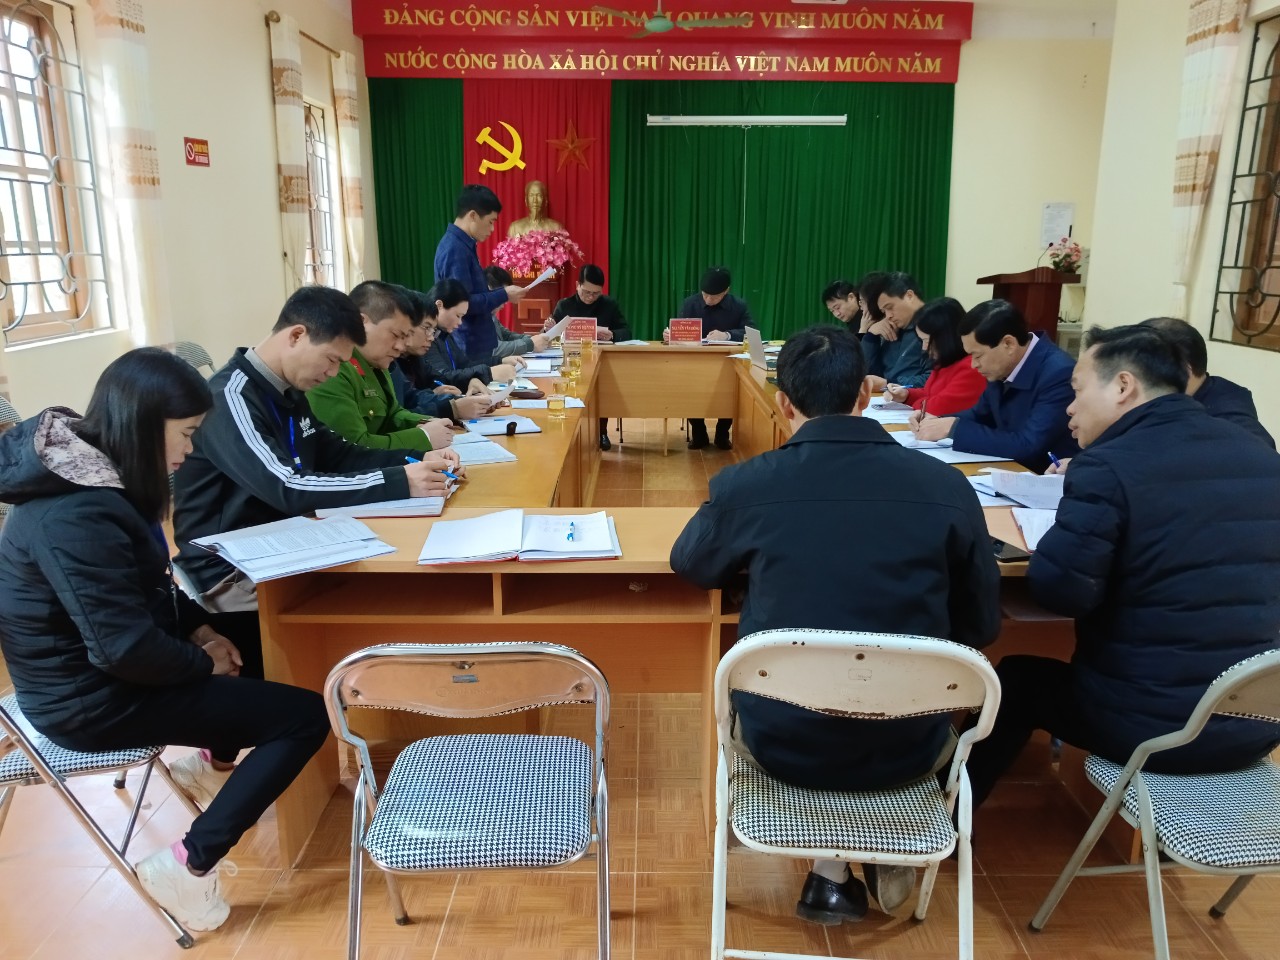 Đồng chí Lâm Văn Việt – Phó Bí thư Đảng ủy xã, giải trình làm rõ một số ý kiến của Đoàn.